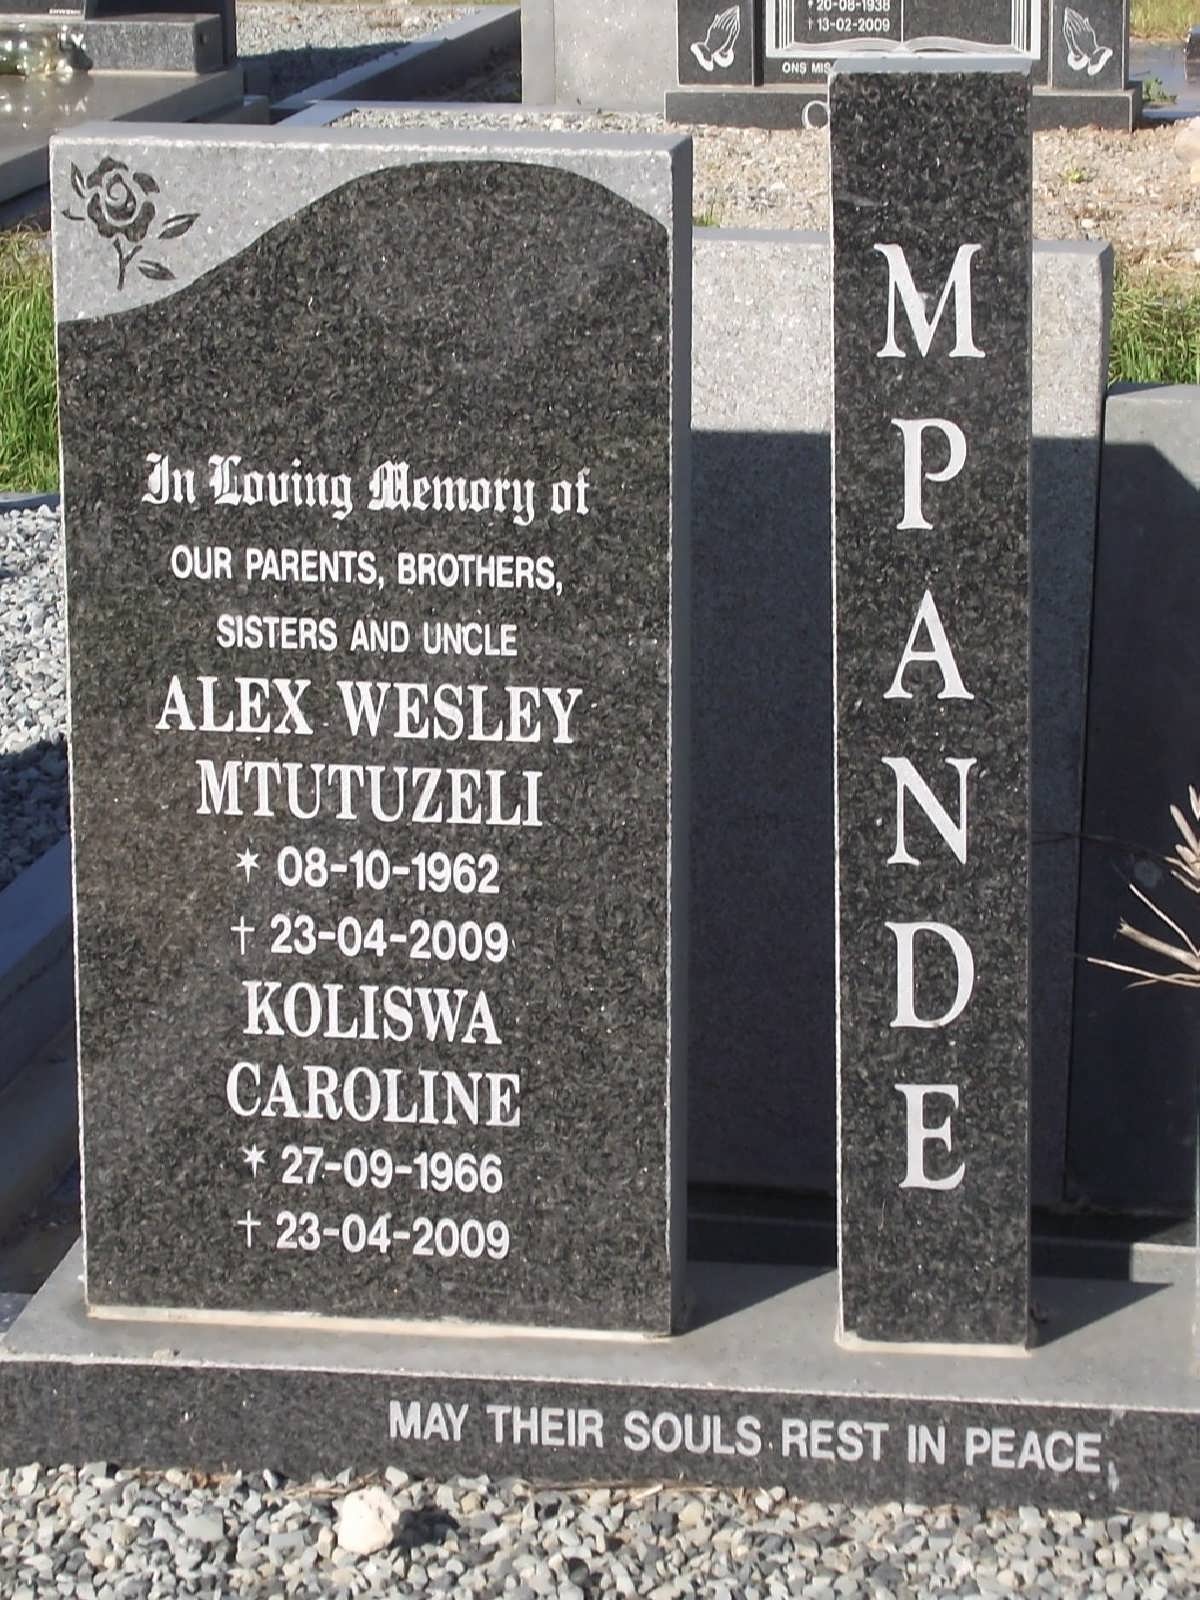 MPANDE Alex Wesley Mtutuzeli 1962-2009 & Koliswa Caroline 1966-2009